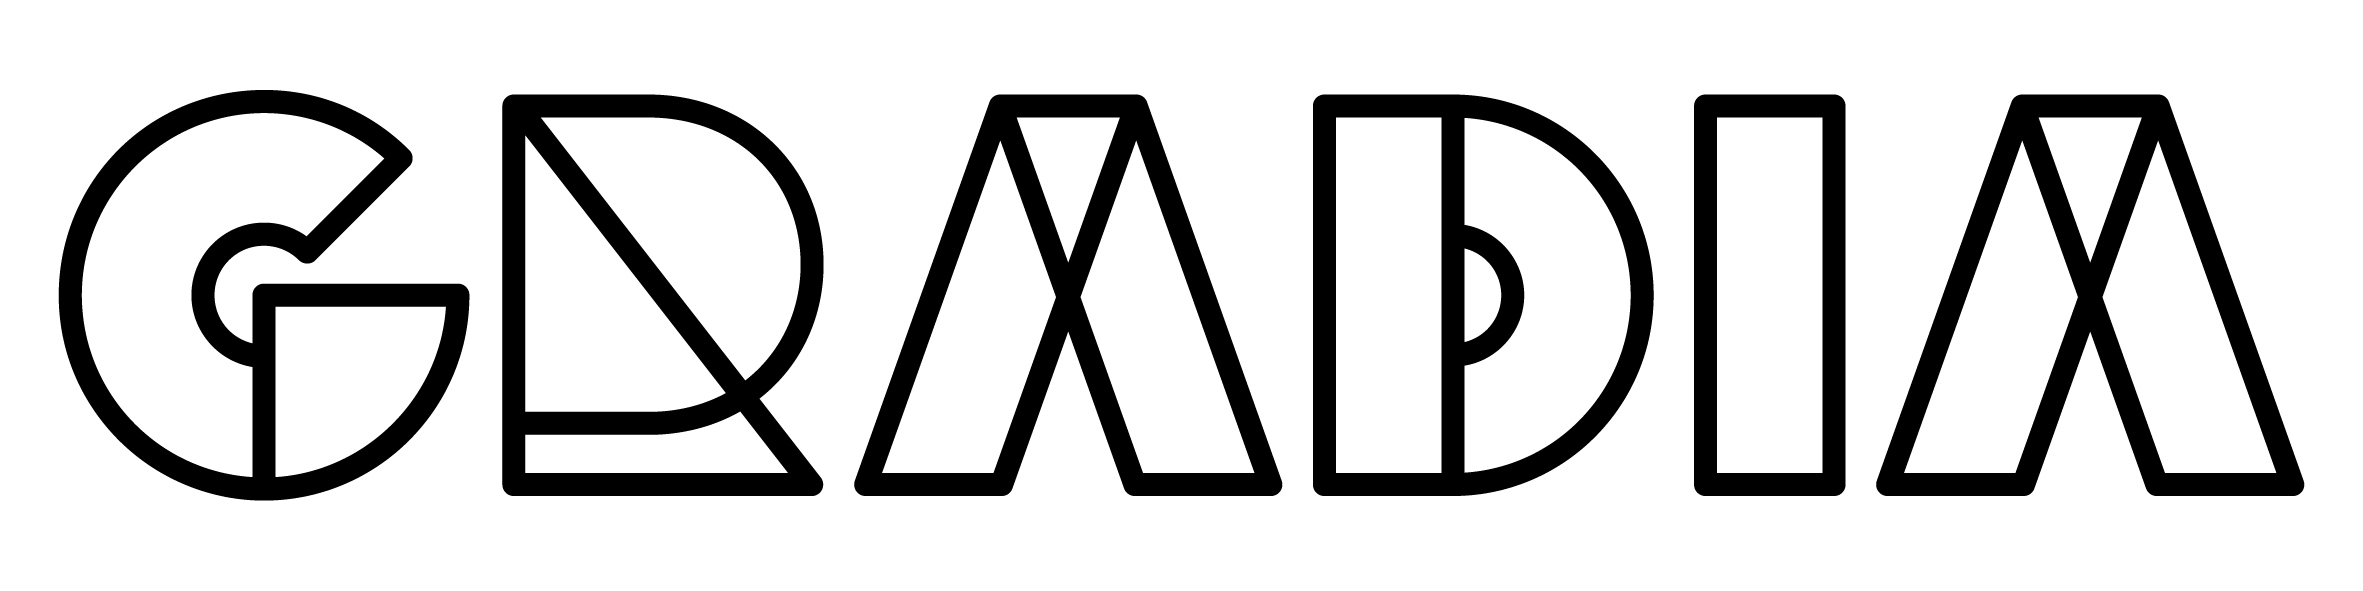 gradia-logo-musta-verkko